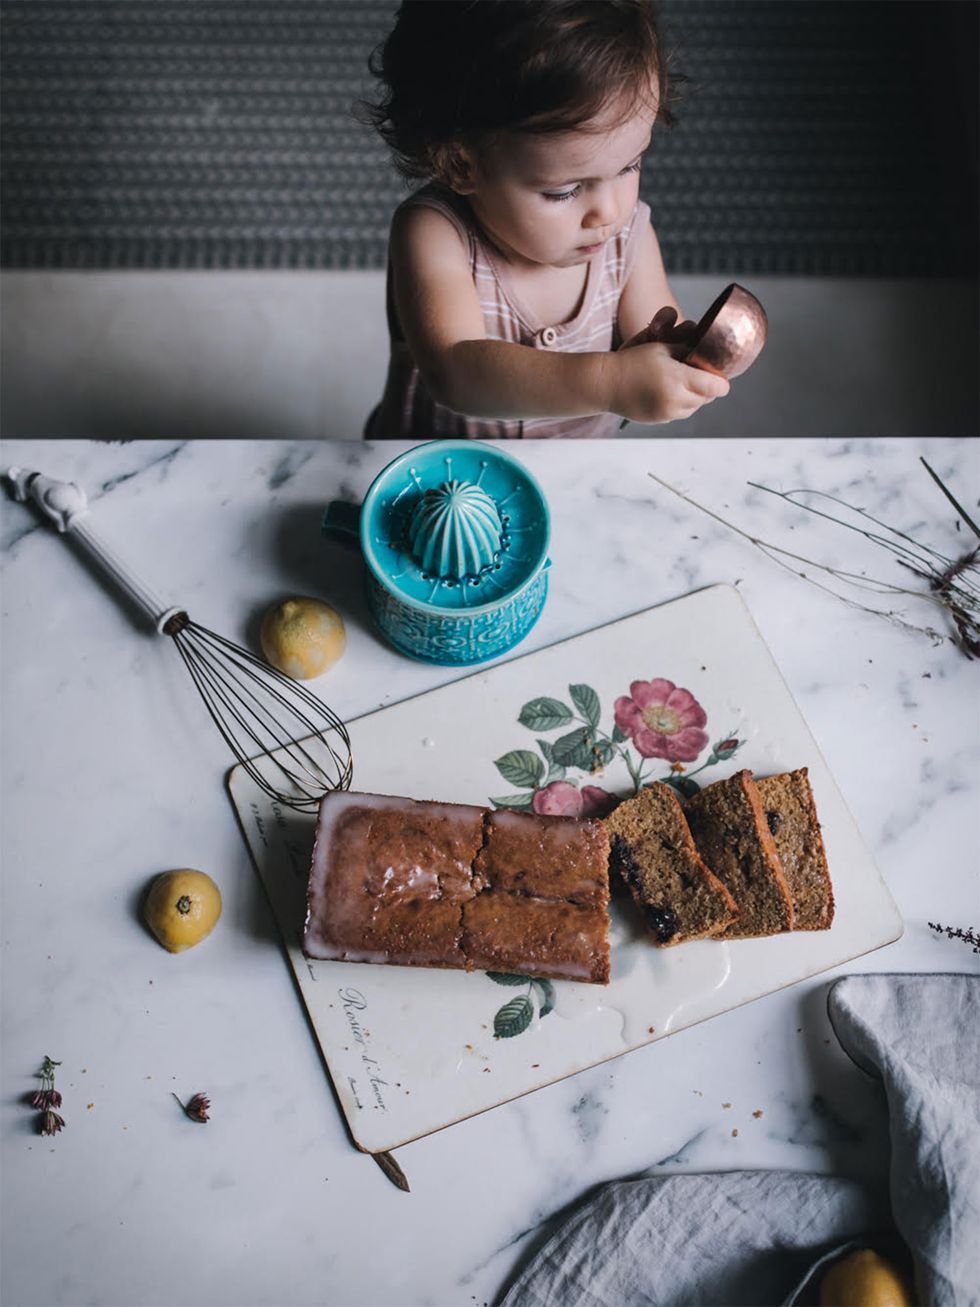 niña pequeña con una cuchara medidora de cocina frente a un bizcocho de limón